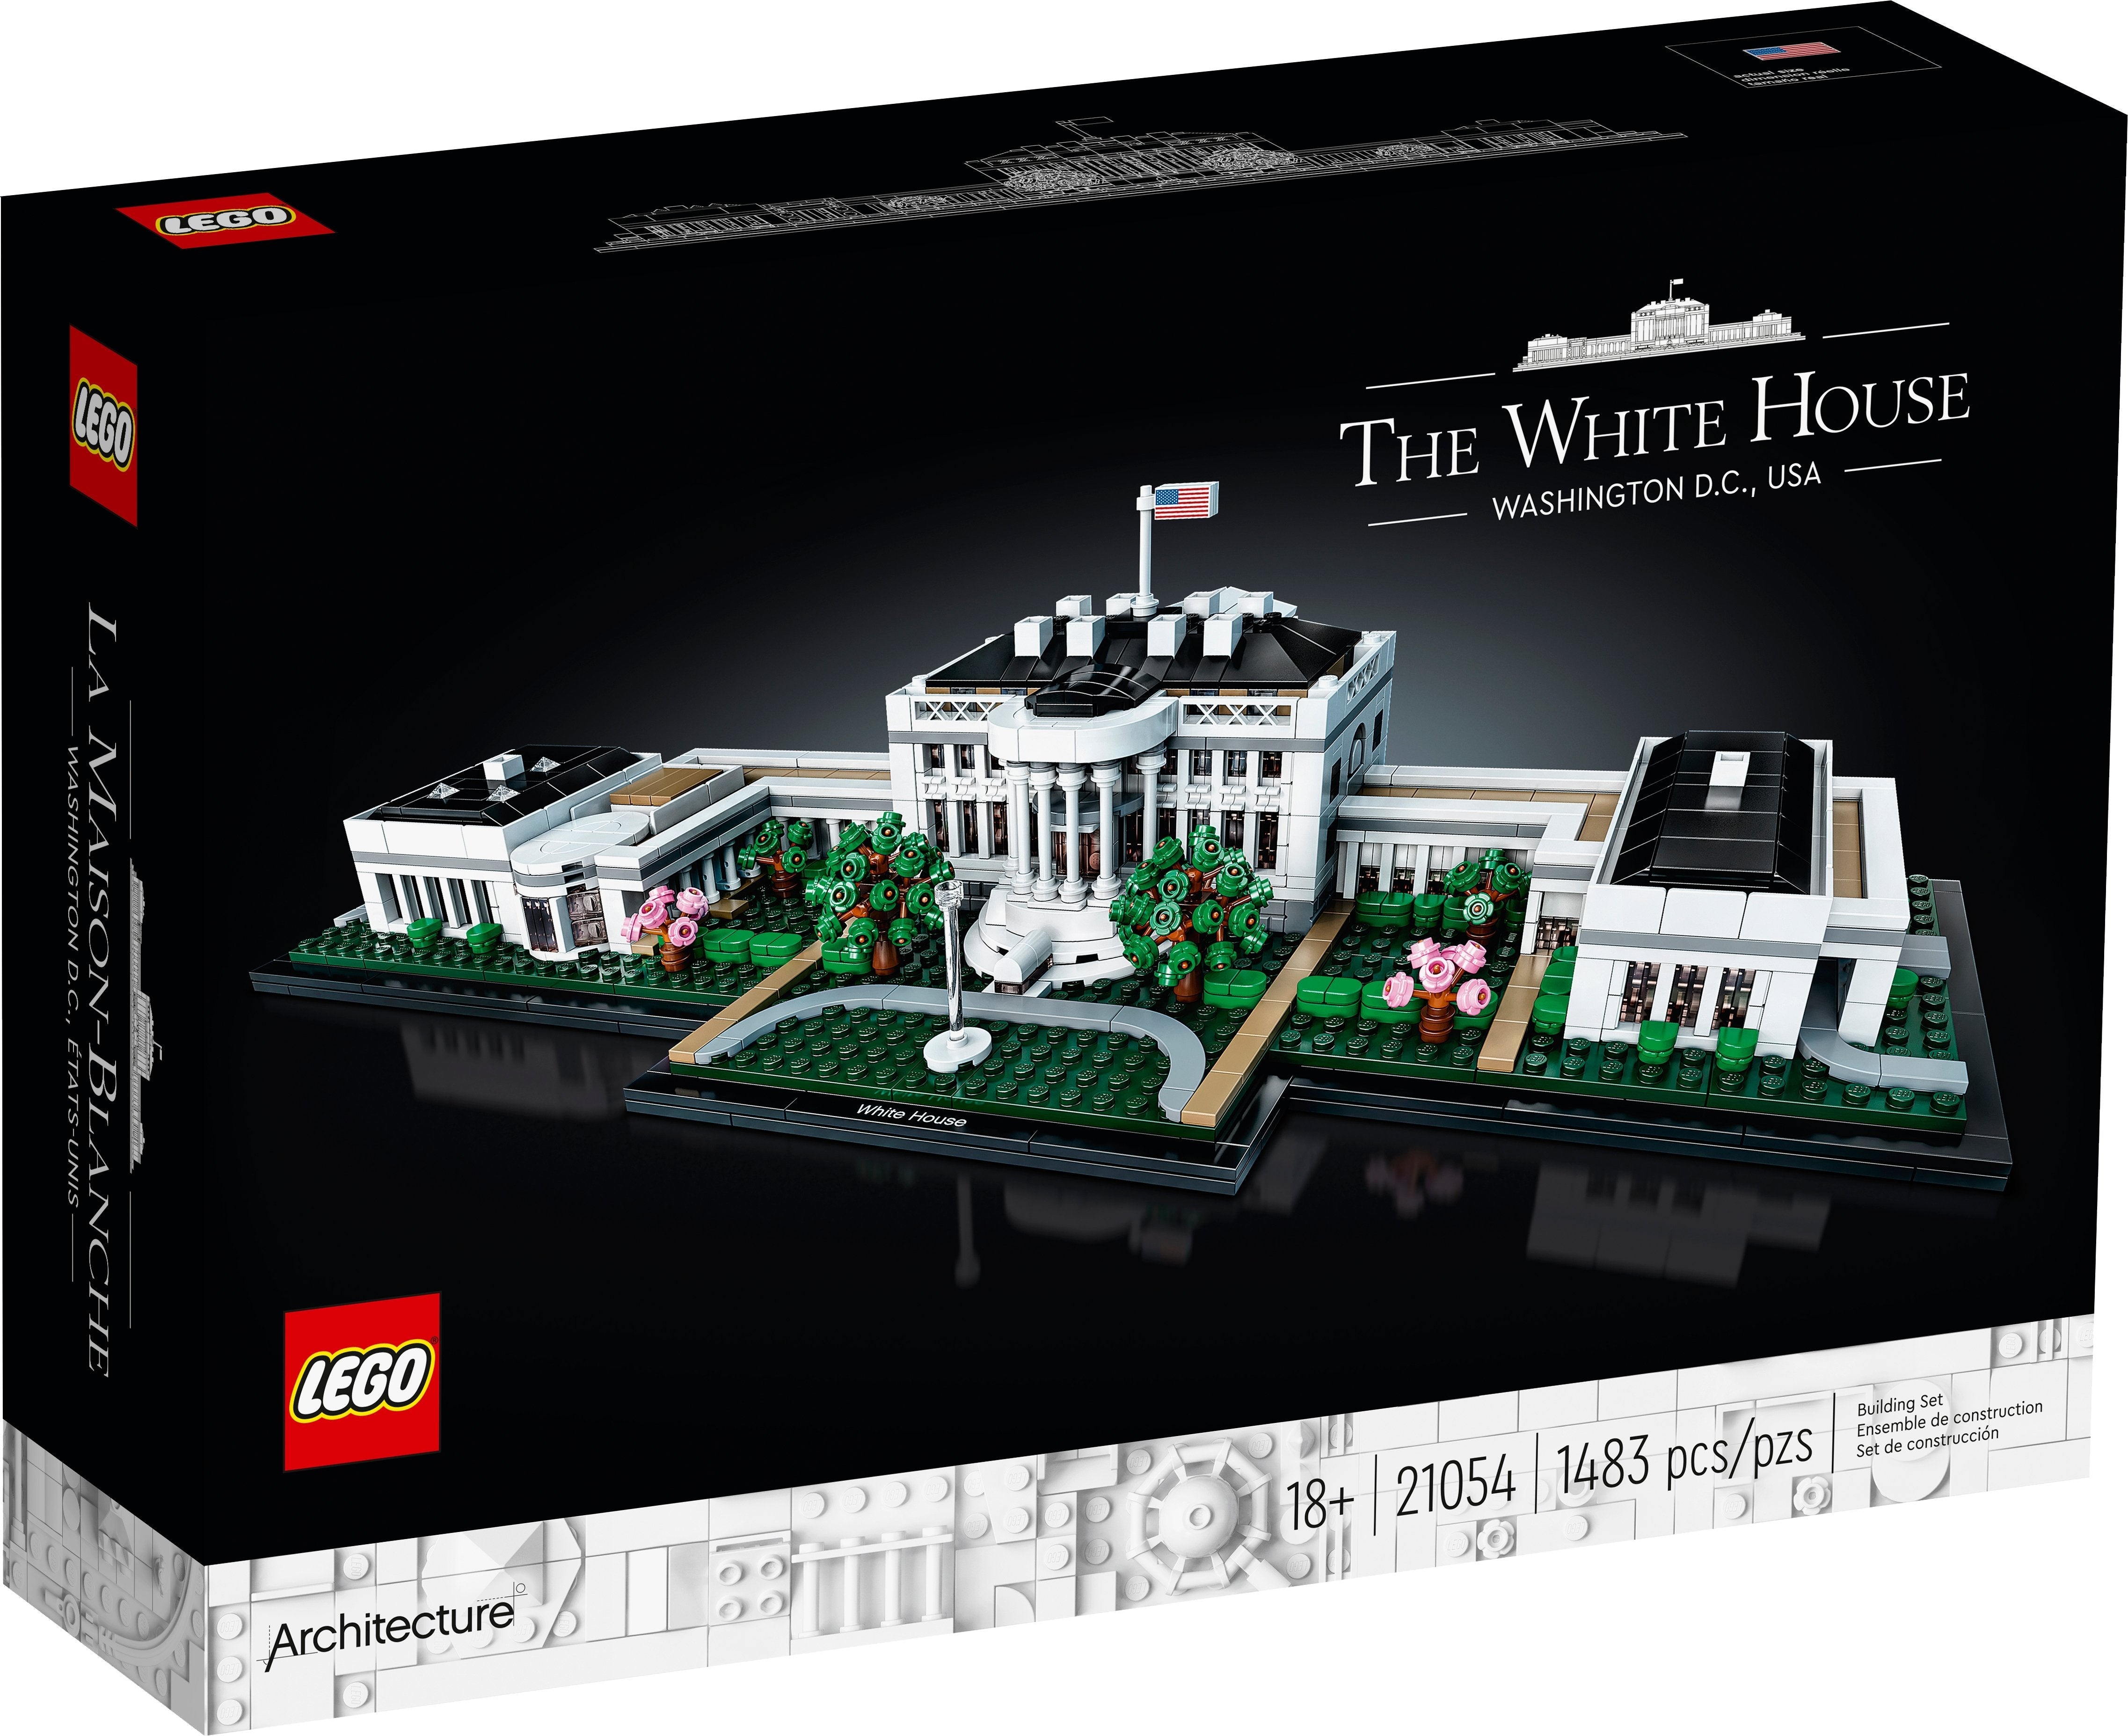 LEGO Architecture Das Weisse Haus (21054) - im GOLDSTIEN.SHOP verfügbar mit Gratisversand ab Schweizer Lager! (5702016617368)